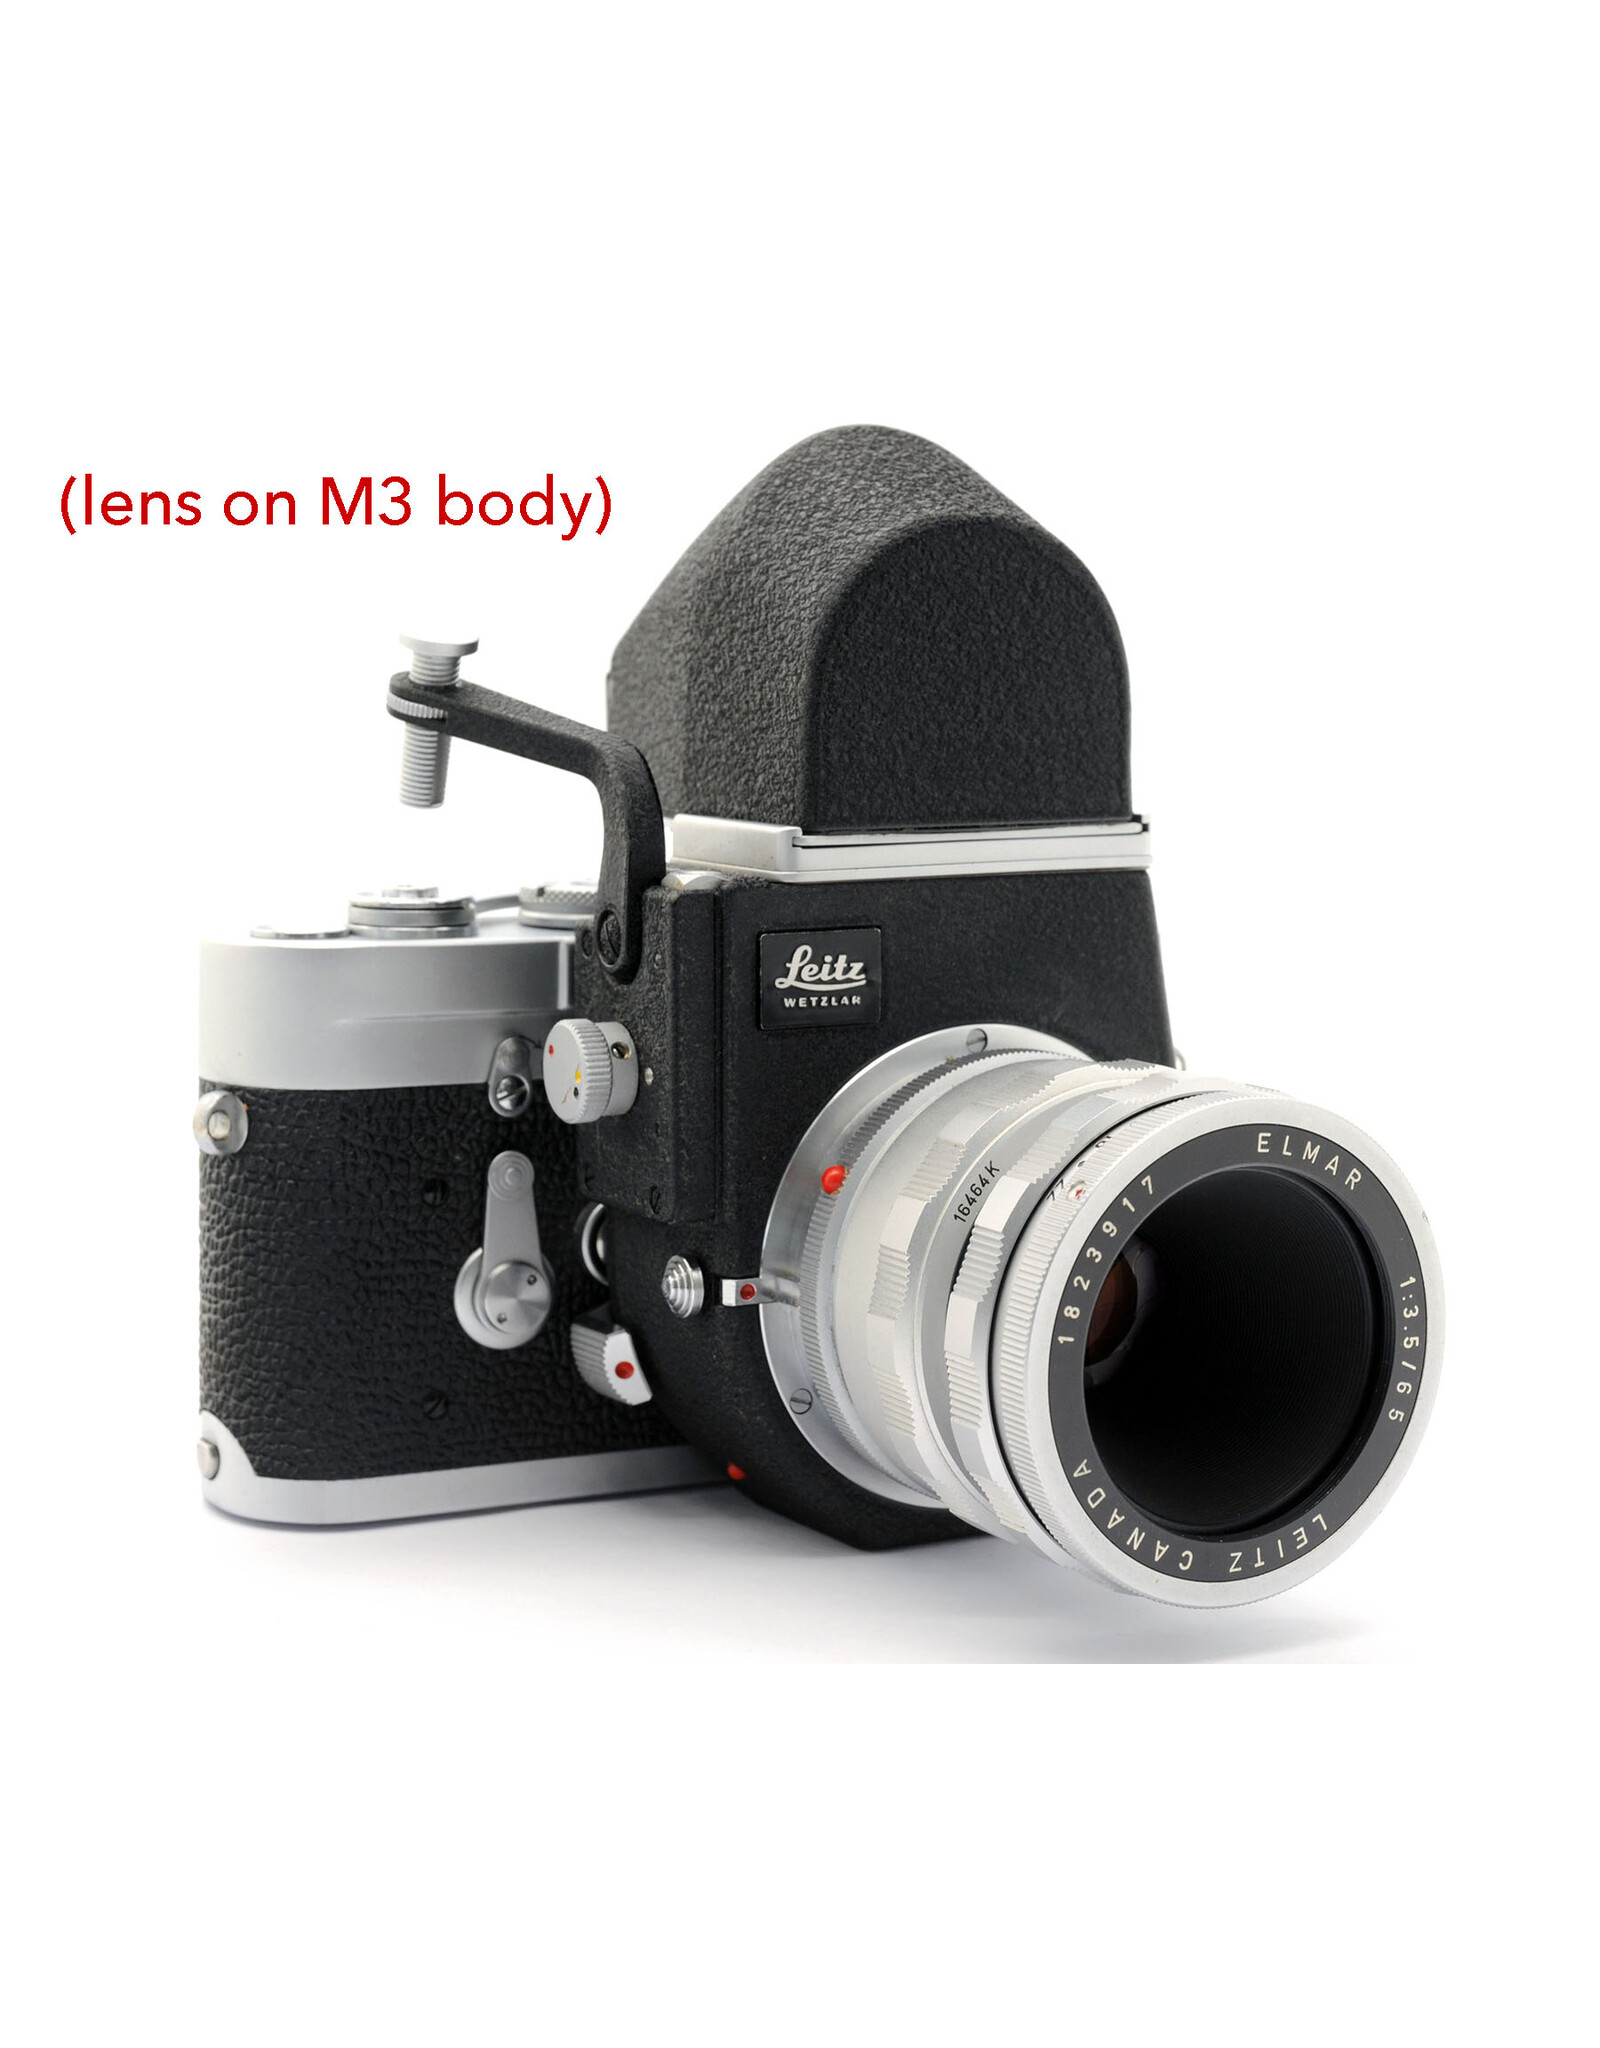 LEITZ CANADA ビゾフレックス ELMAR 65mm f3.5 - フィルムカメラ